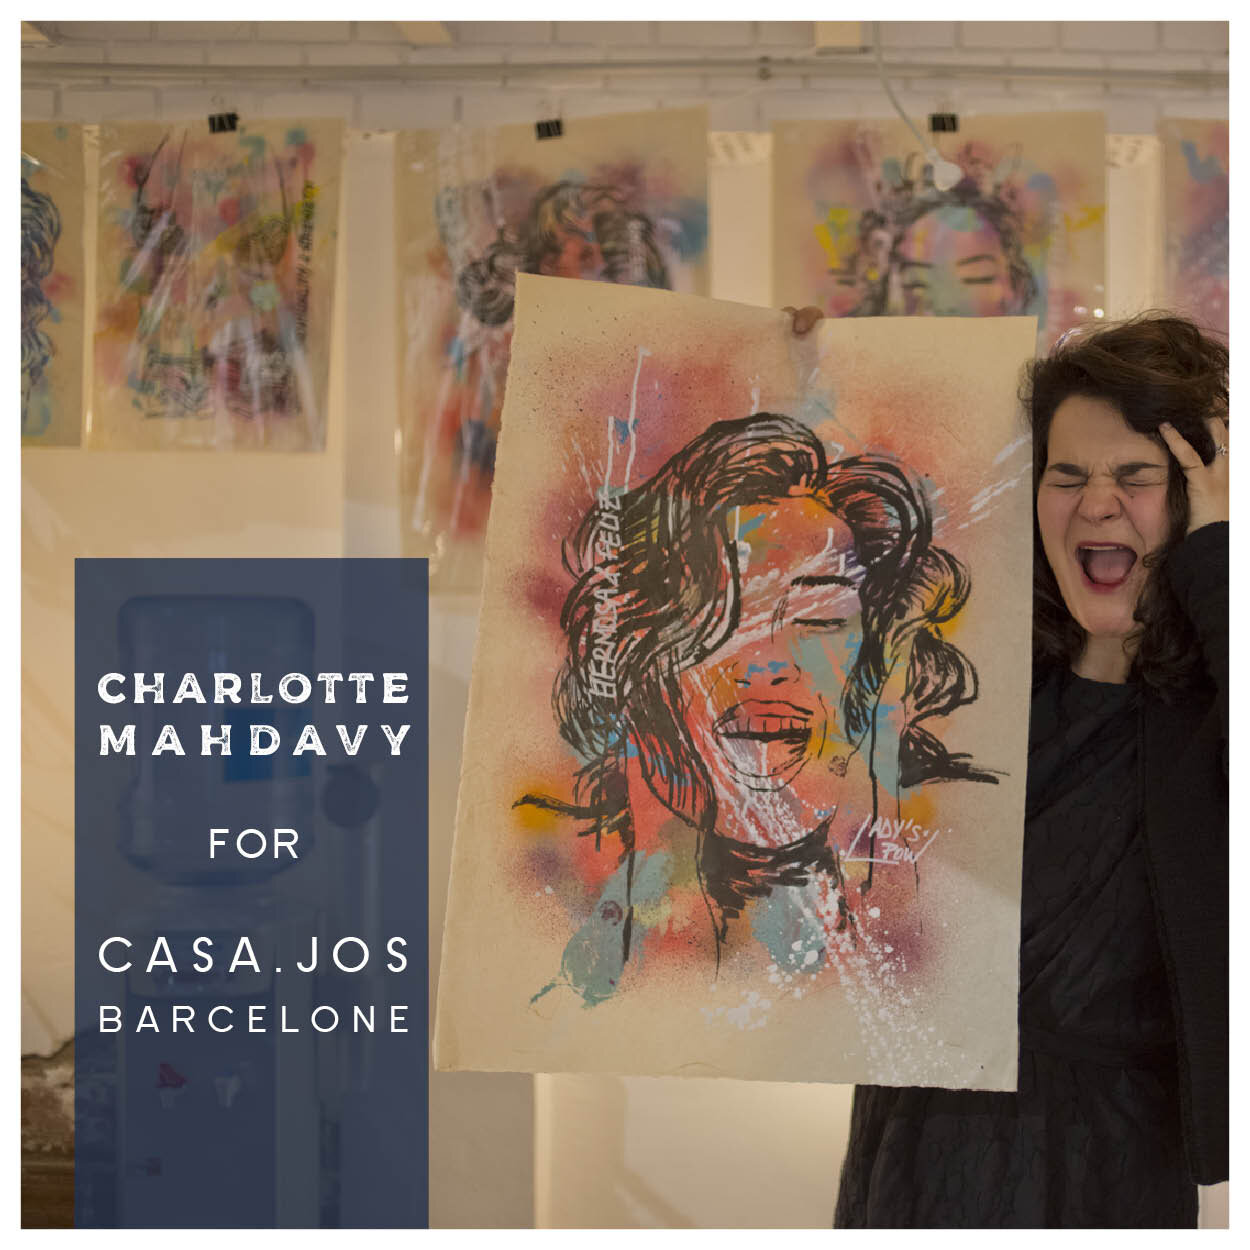 CHARLOTTE MAHDAVY CASAJOS EXPO 202011.jpg